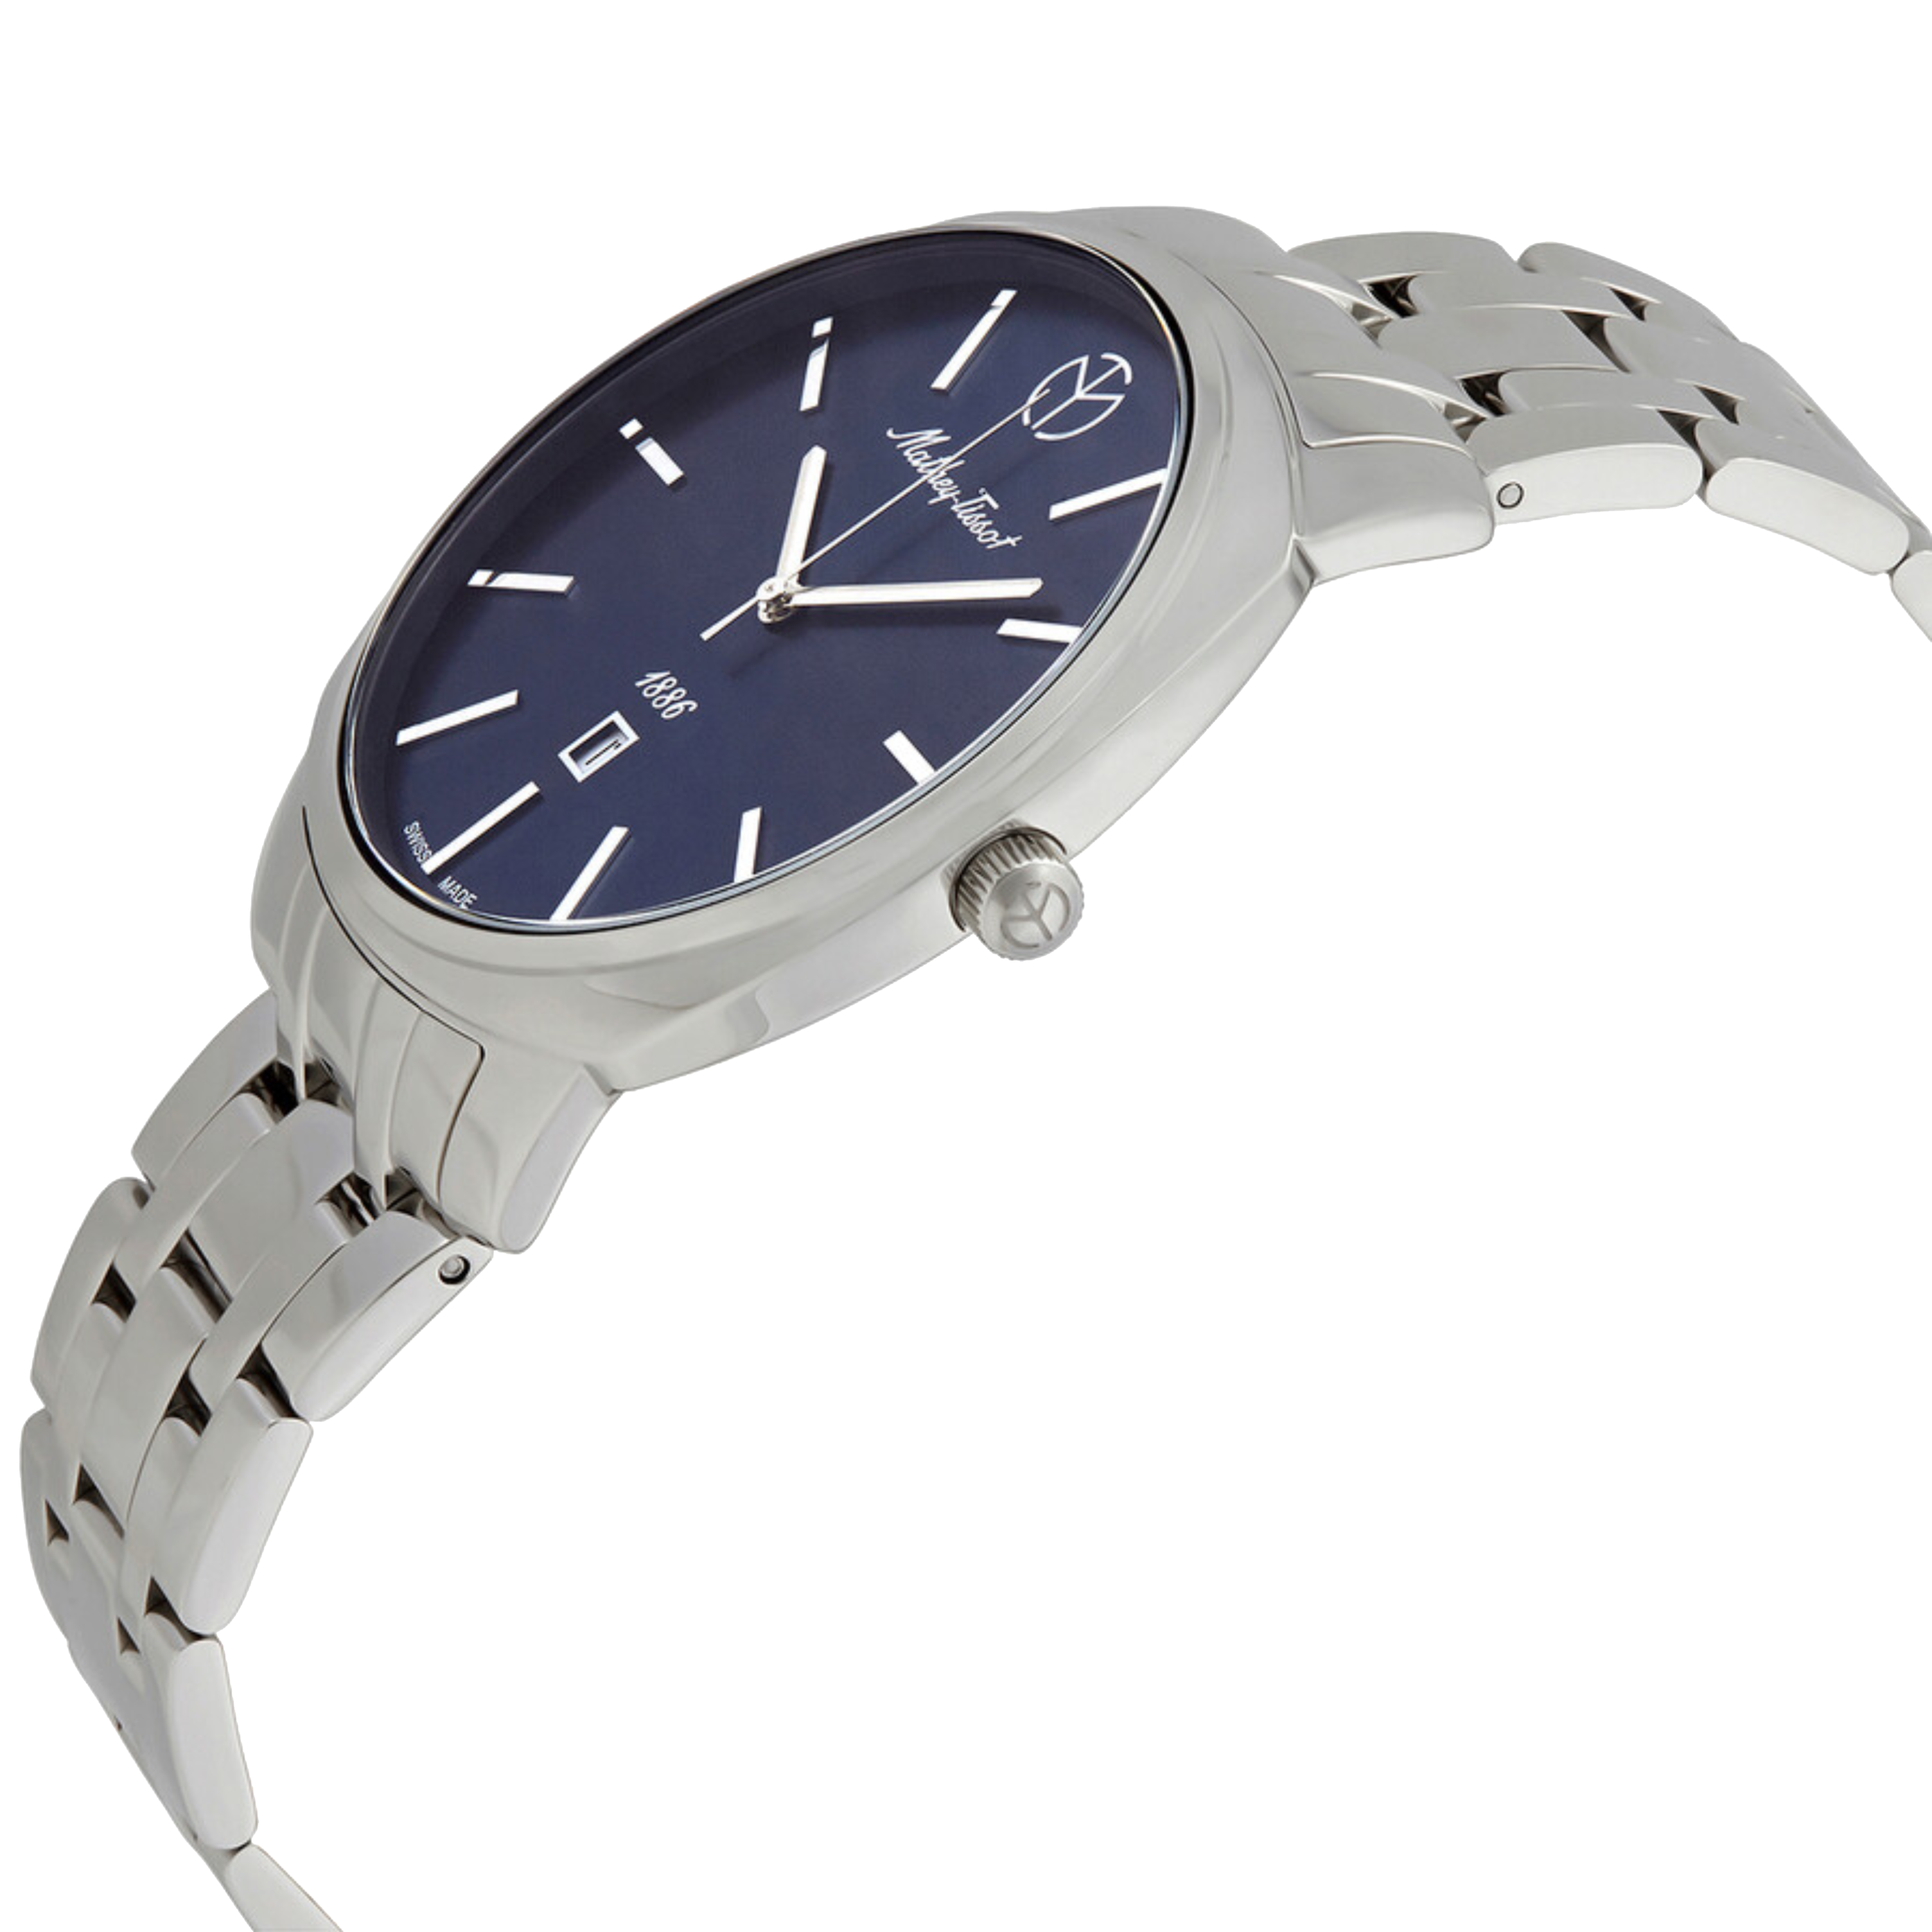 שעון יד לגבר Mathey Tissot H6940MABU 42mm צבע כסף/כחול - אחריות לשנתיים